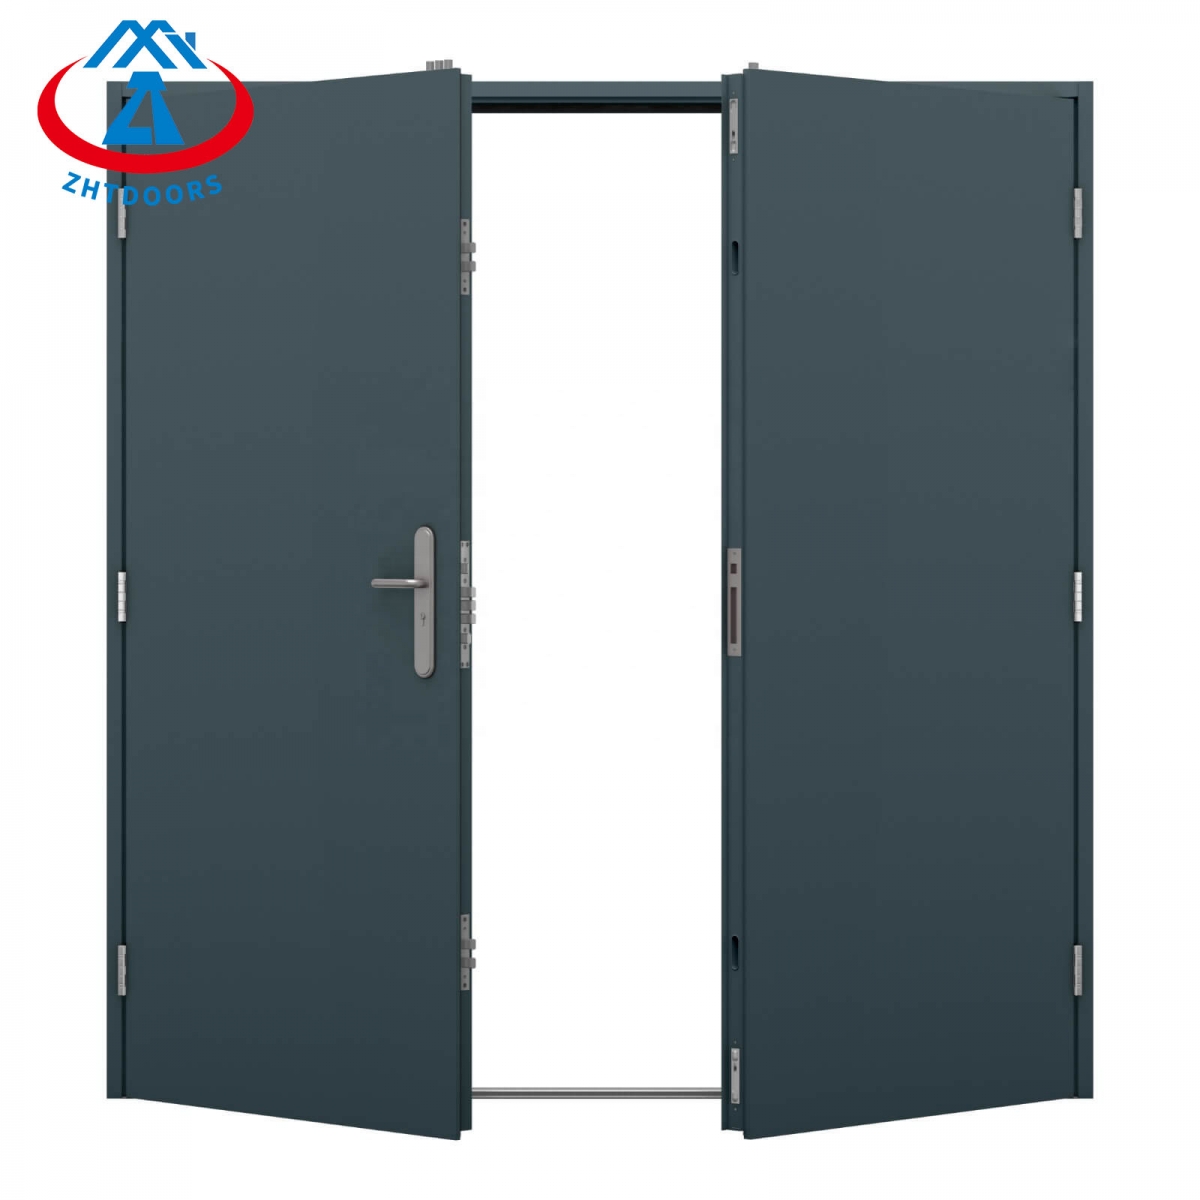 28 Inch Fire Rated Door-ZTFIRE Door- Fire Door,Fireproof Door,Fire rated Door,Fire Resistant Door,Steel Door,Metal Door,Exit Door